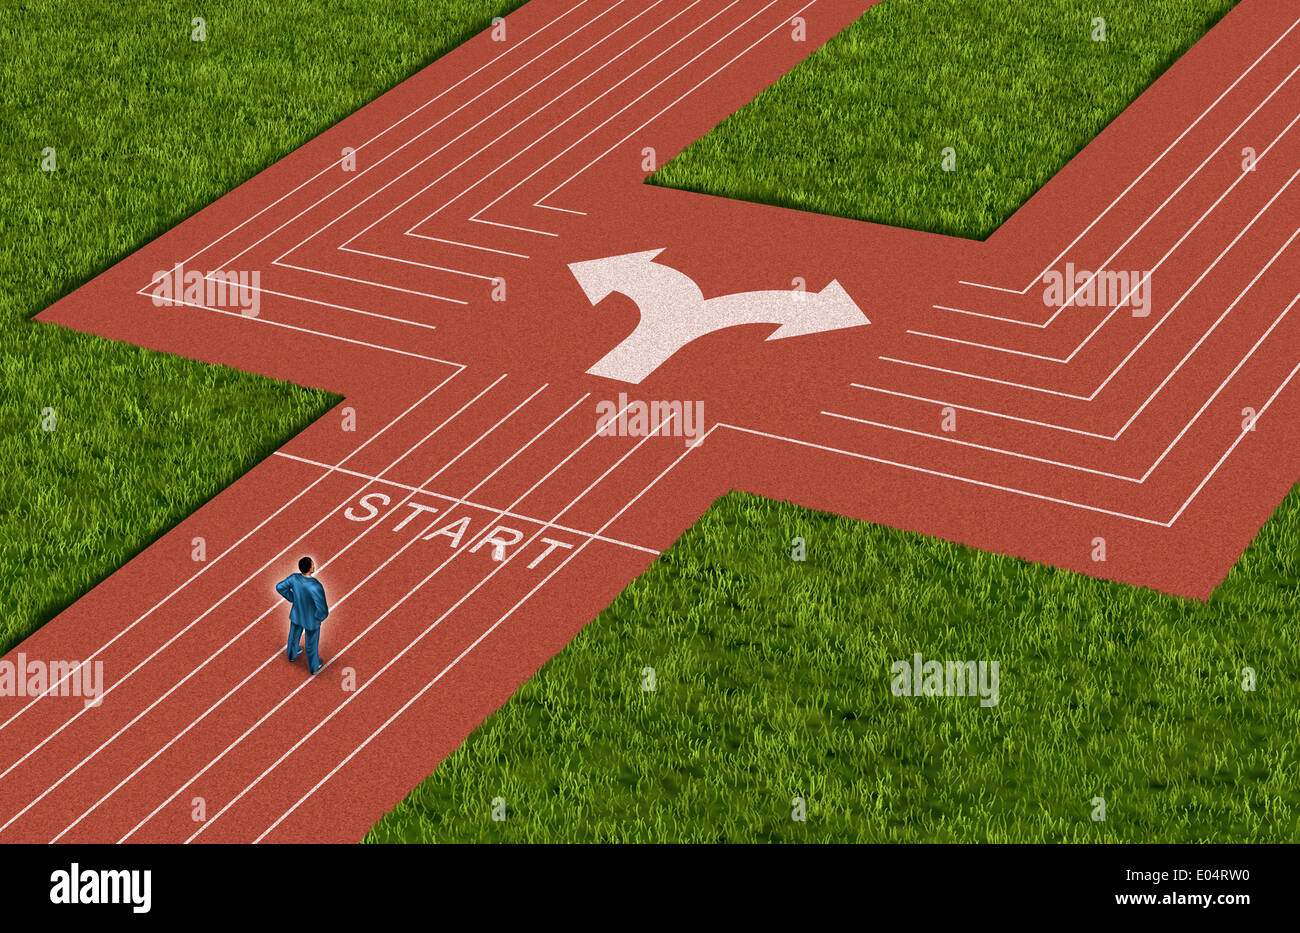 Geschäftsmann Kreuzung Konzept den richtigen Weg zu wählen, als ein Mann auf einem Leichtathletik Sport Track vor eine schwierige Wahl und Dilemma mit zwei verschiedenen Richtungen als Metapher für Entscheidung Krise. Stockfoto